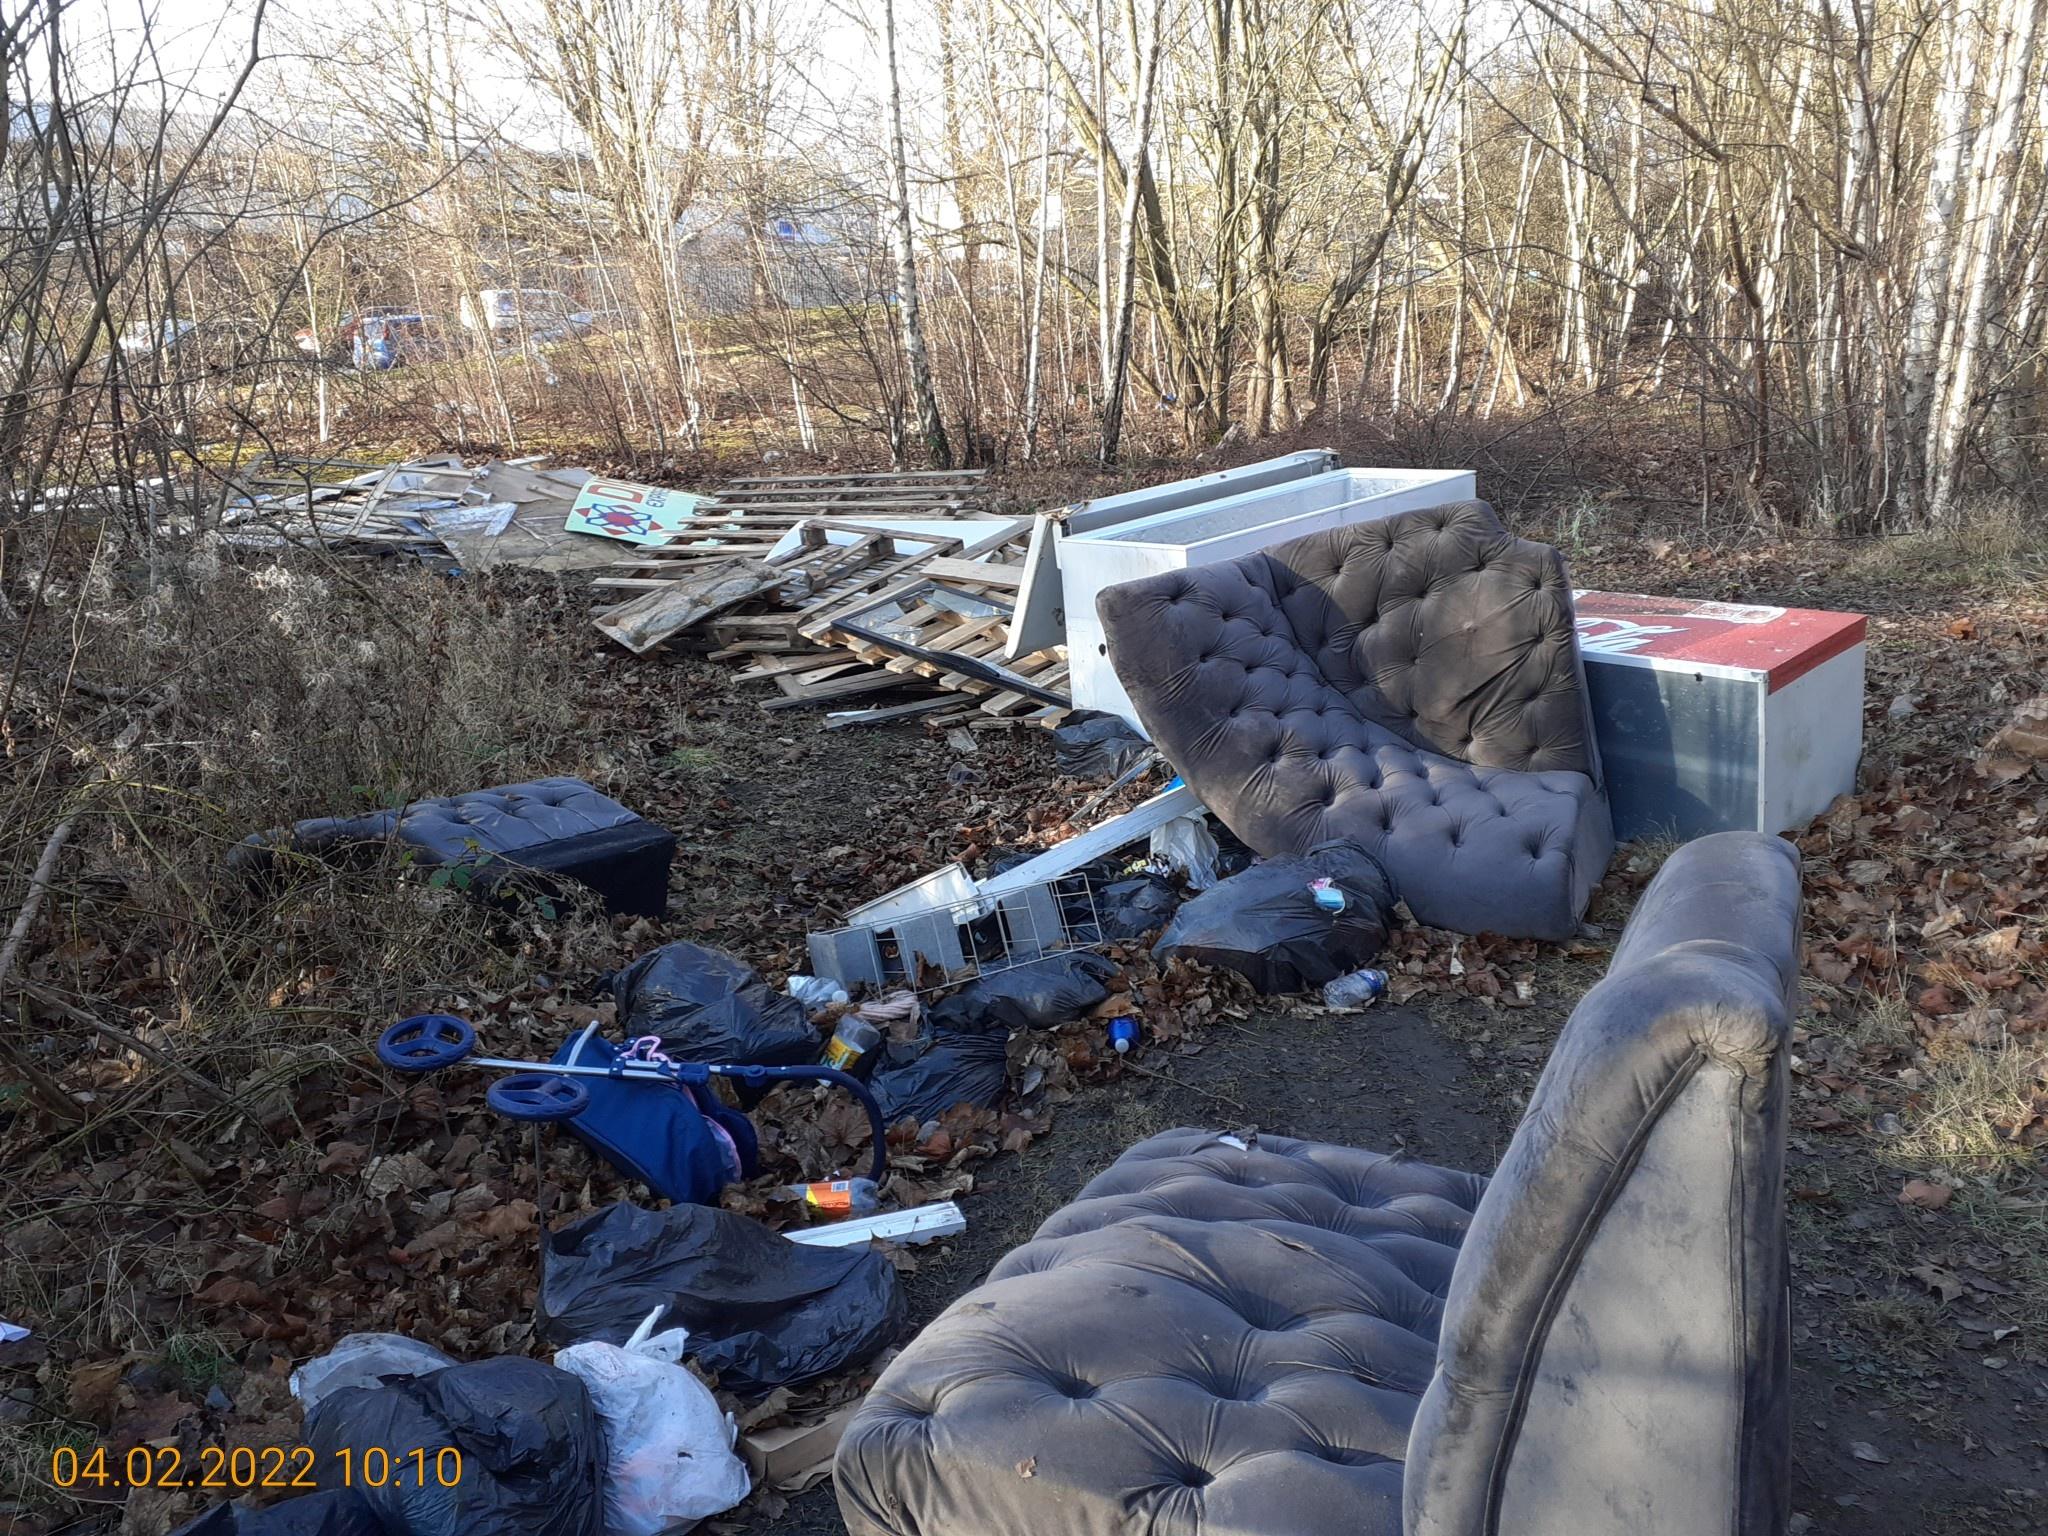 Waste dumped on land near Shelley Road in Lemington